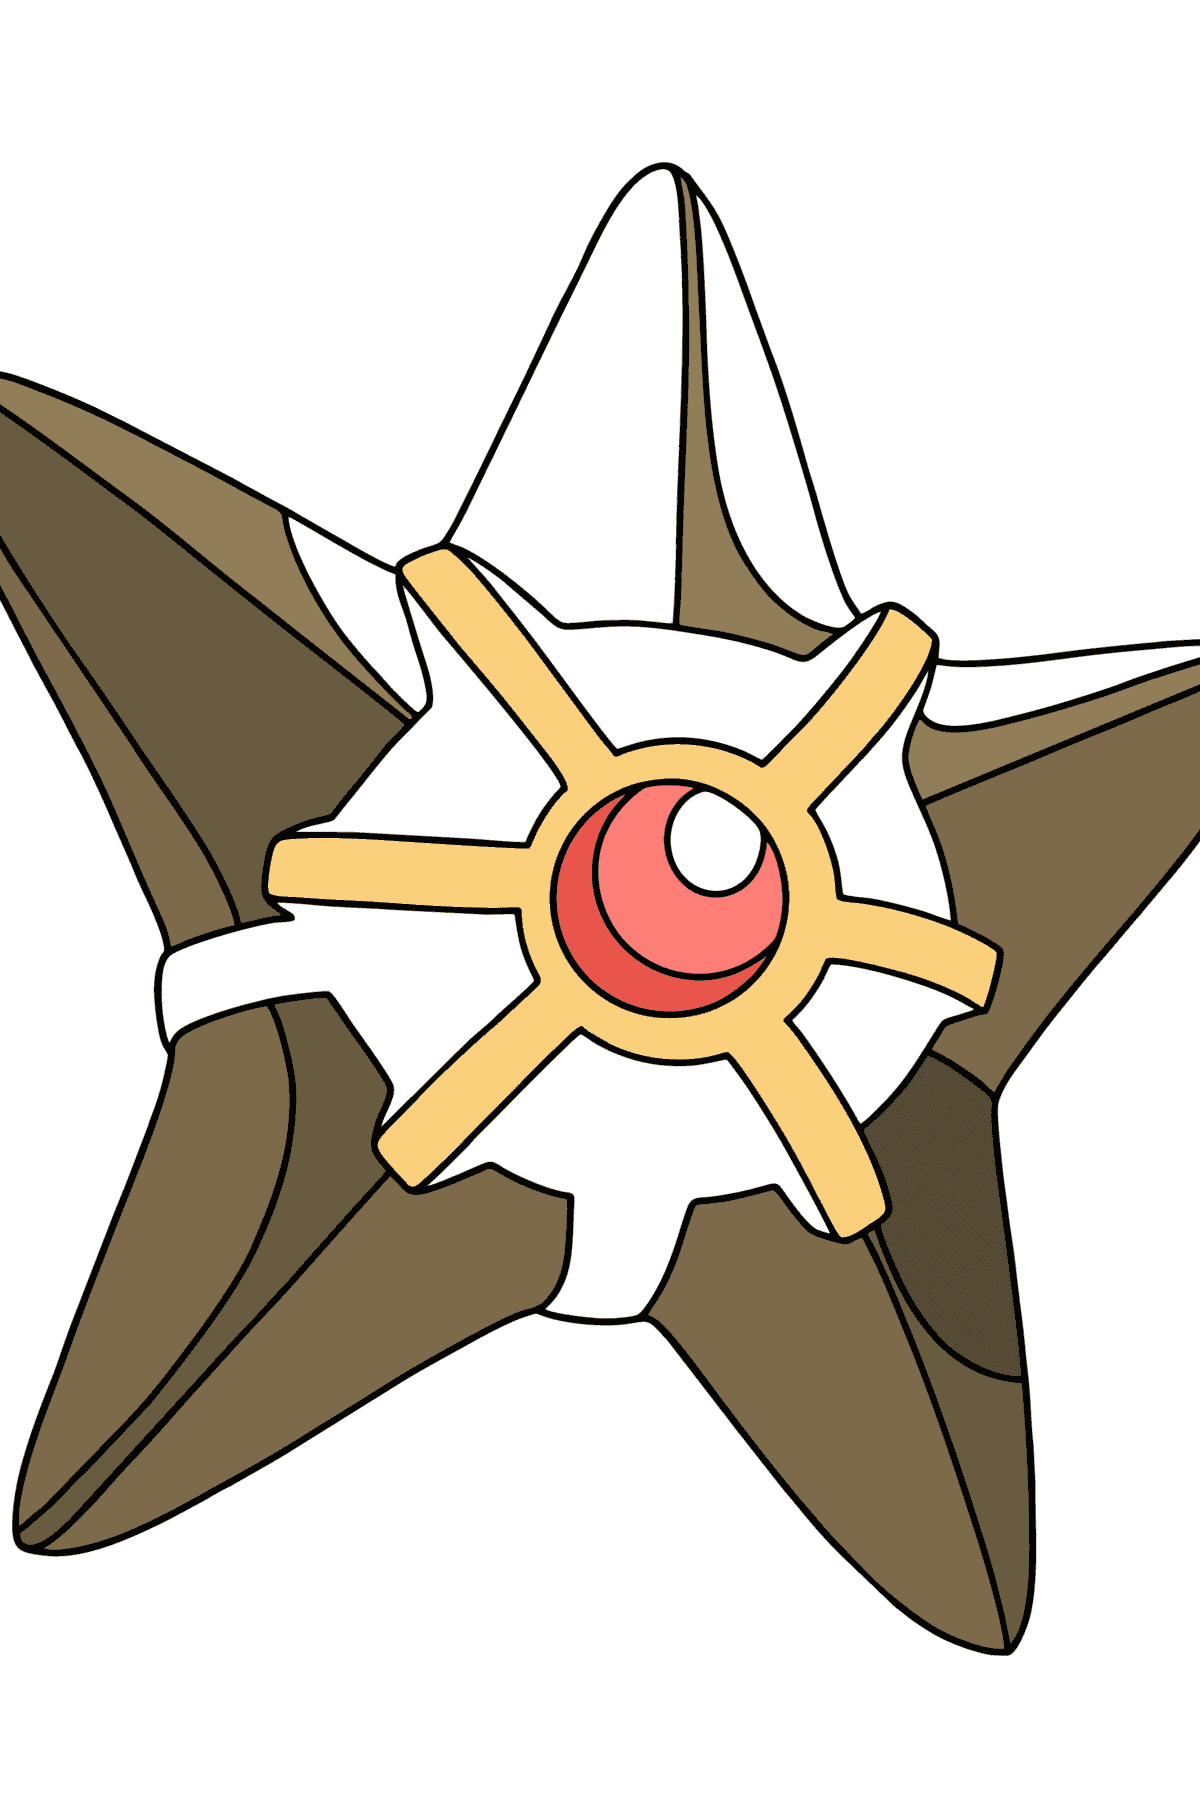 Målarbild Pokémon XY Staryu - Målarbilder För barn